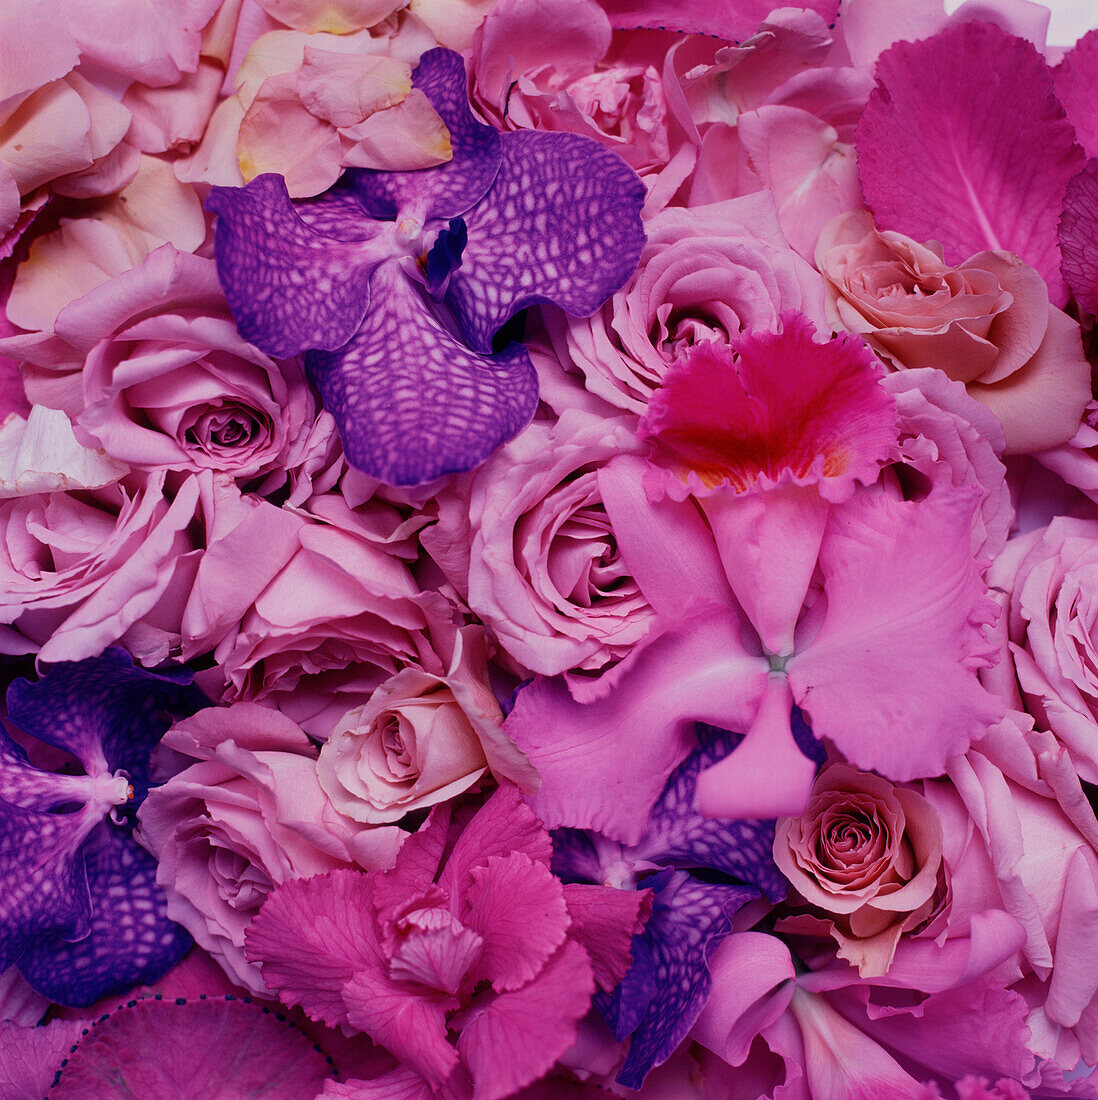 Auslage mit rosa, lila und fliederfarbenen Blumenblättern